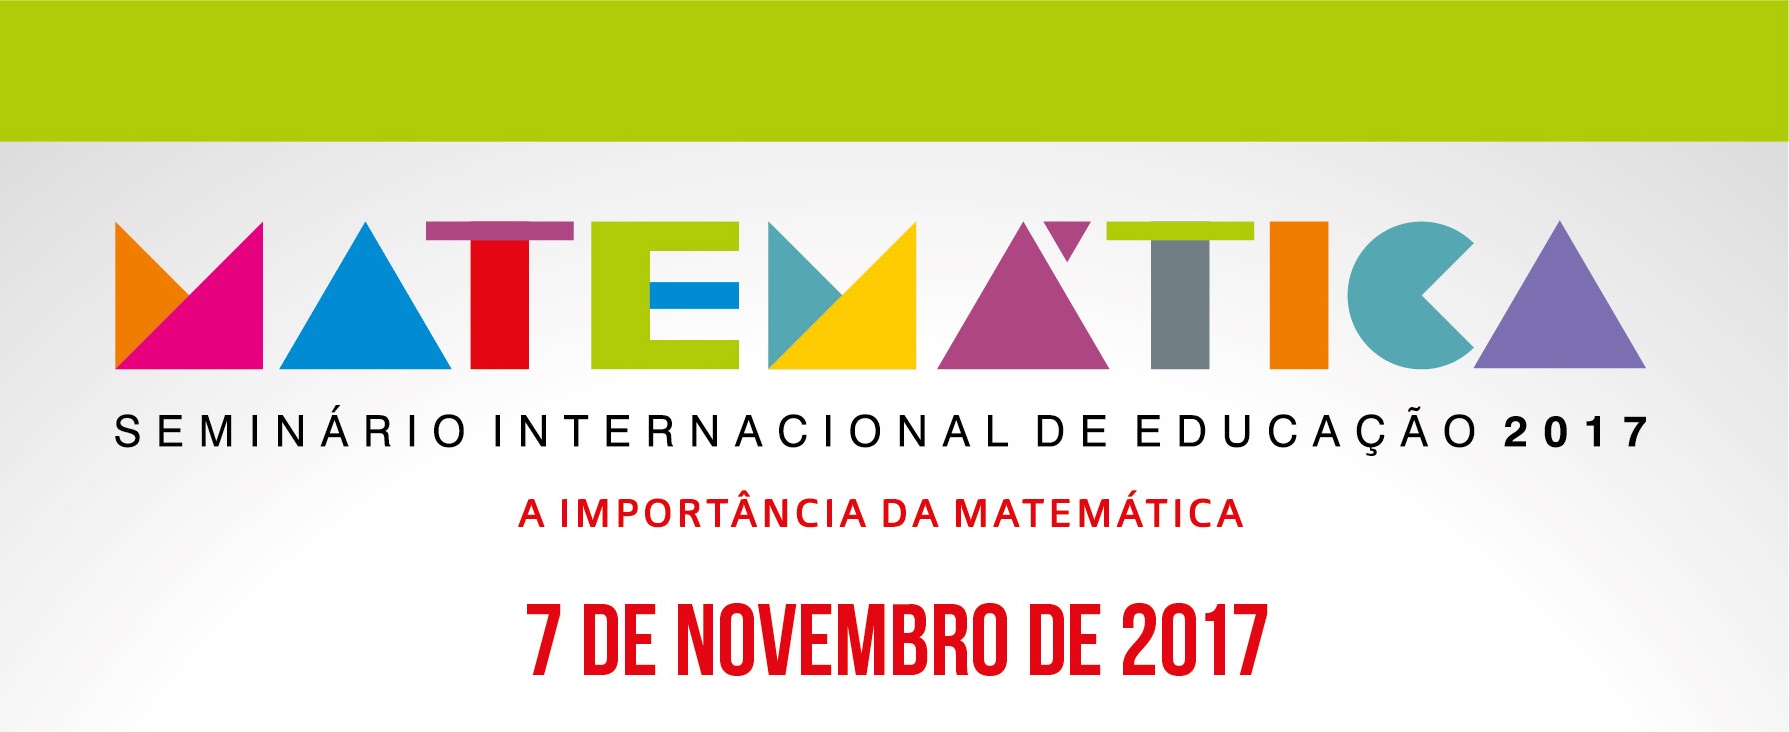 Abertas inscrições para o Seminário Internacional de Educação – A Importância da Matemática